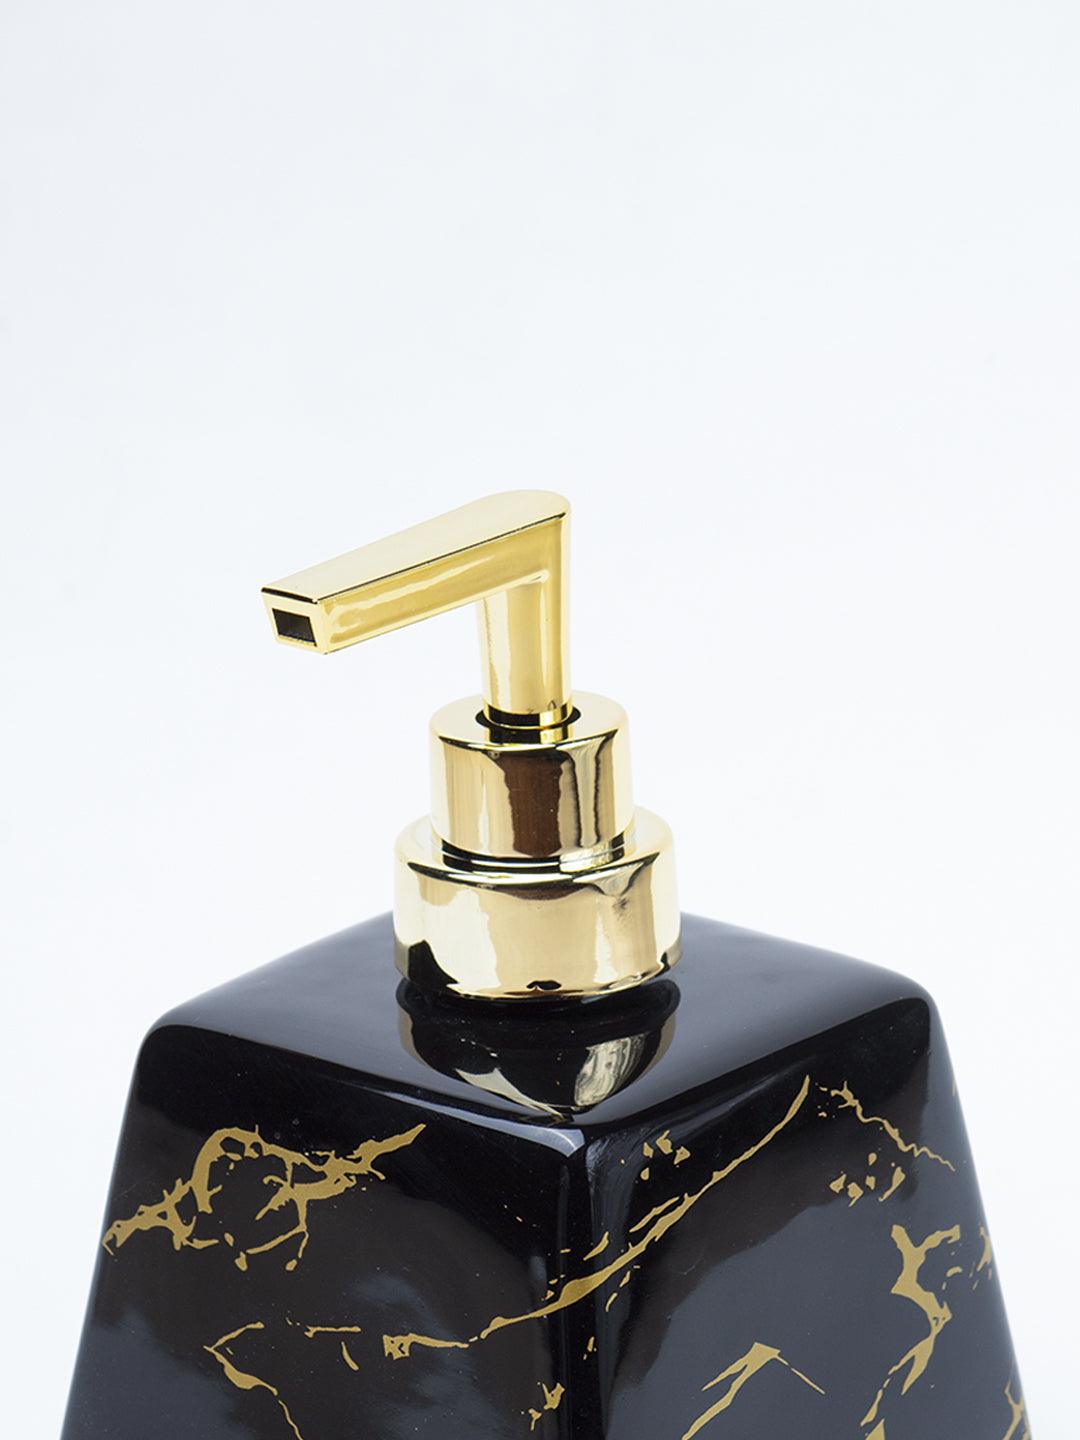 Black Ceramic Soap Dispenser - Stone Finish, Bath Accessories - 4